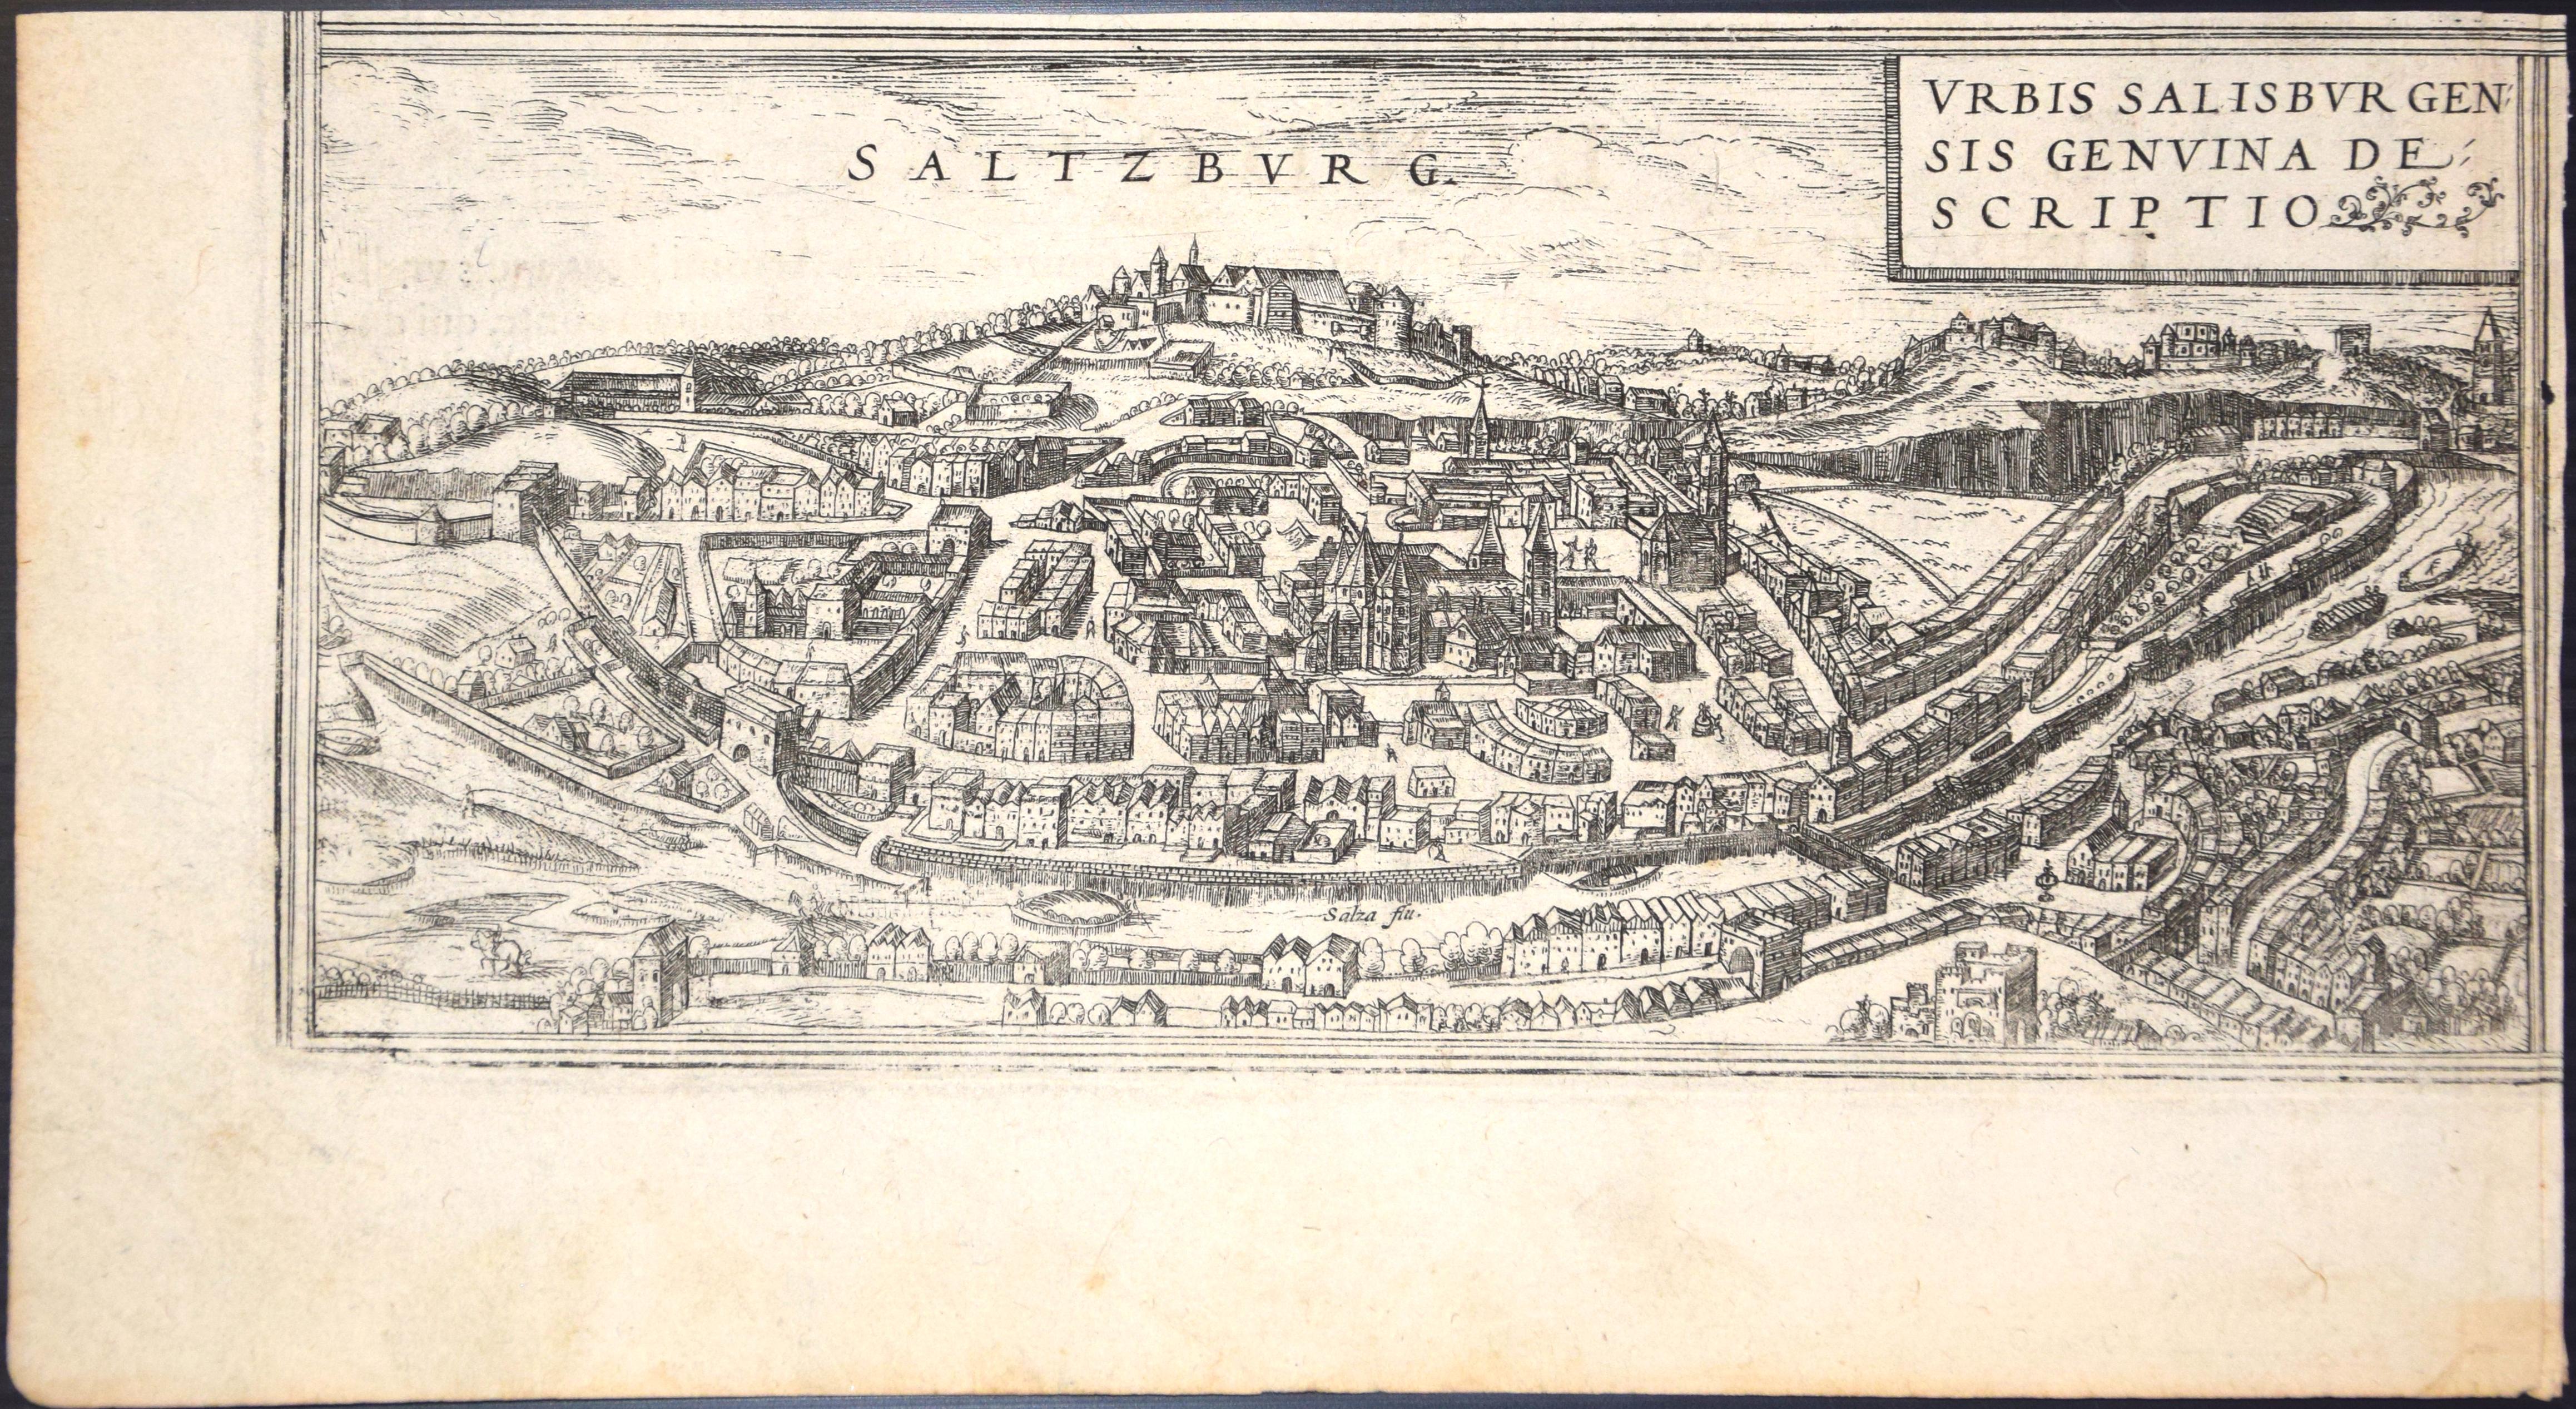 Salzburg, Map from "Civitates Orbis Terrarum"-by F. Hogenberg - 1575